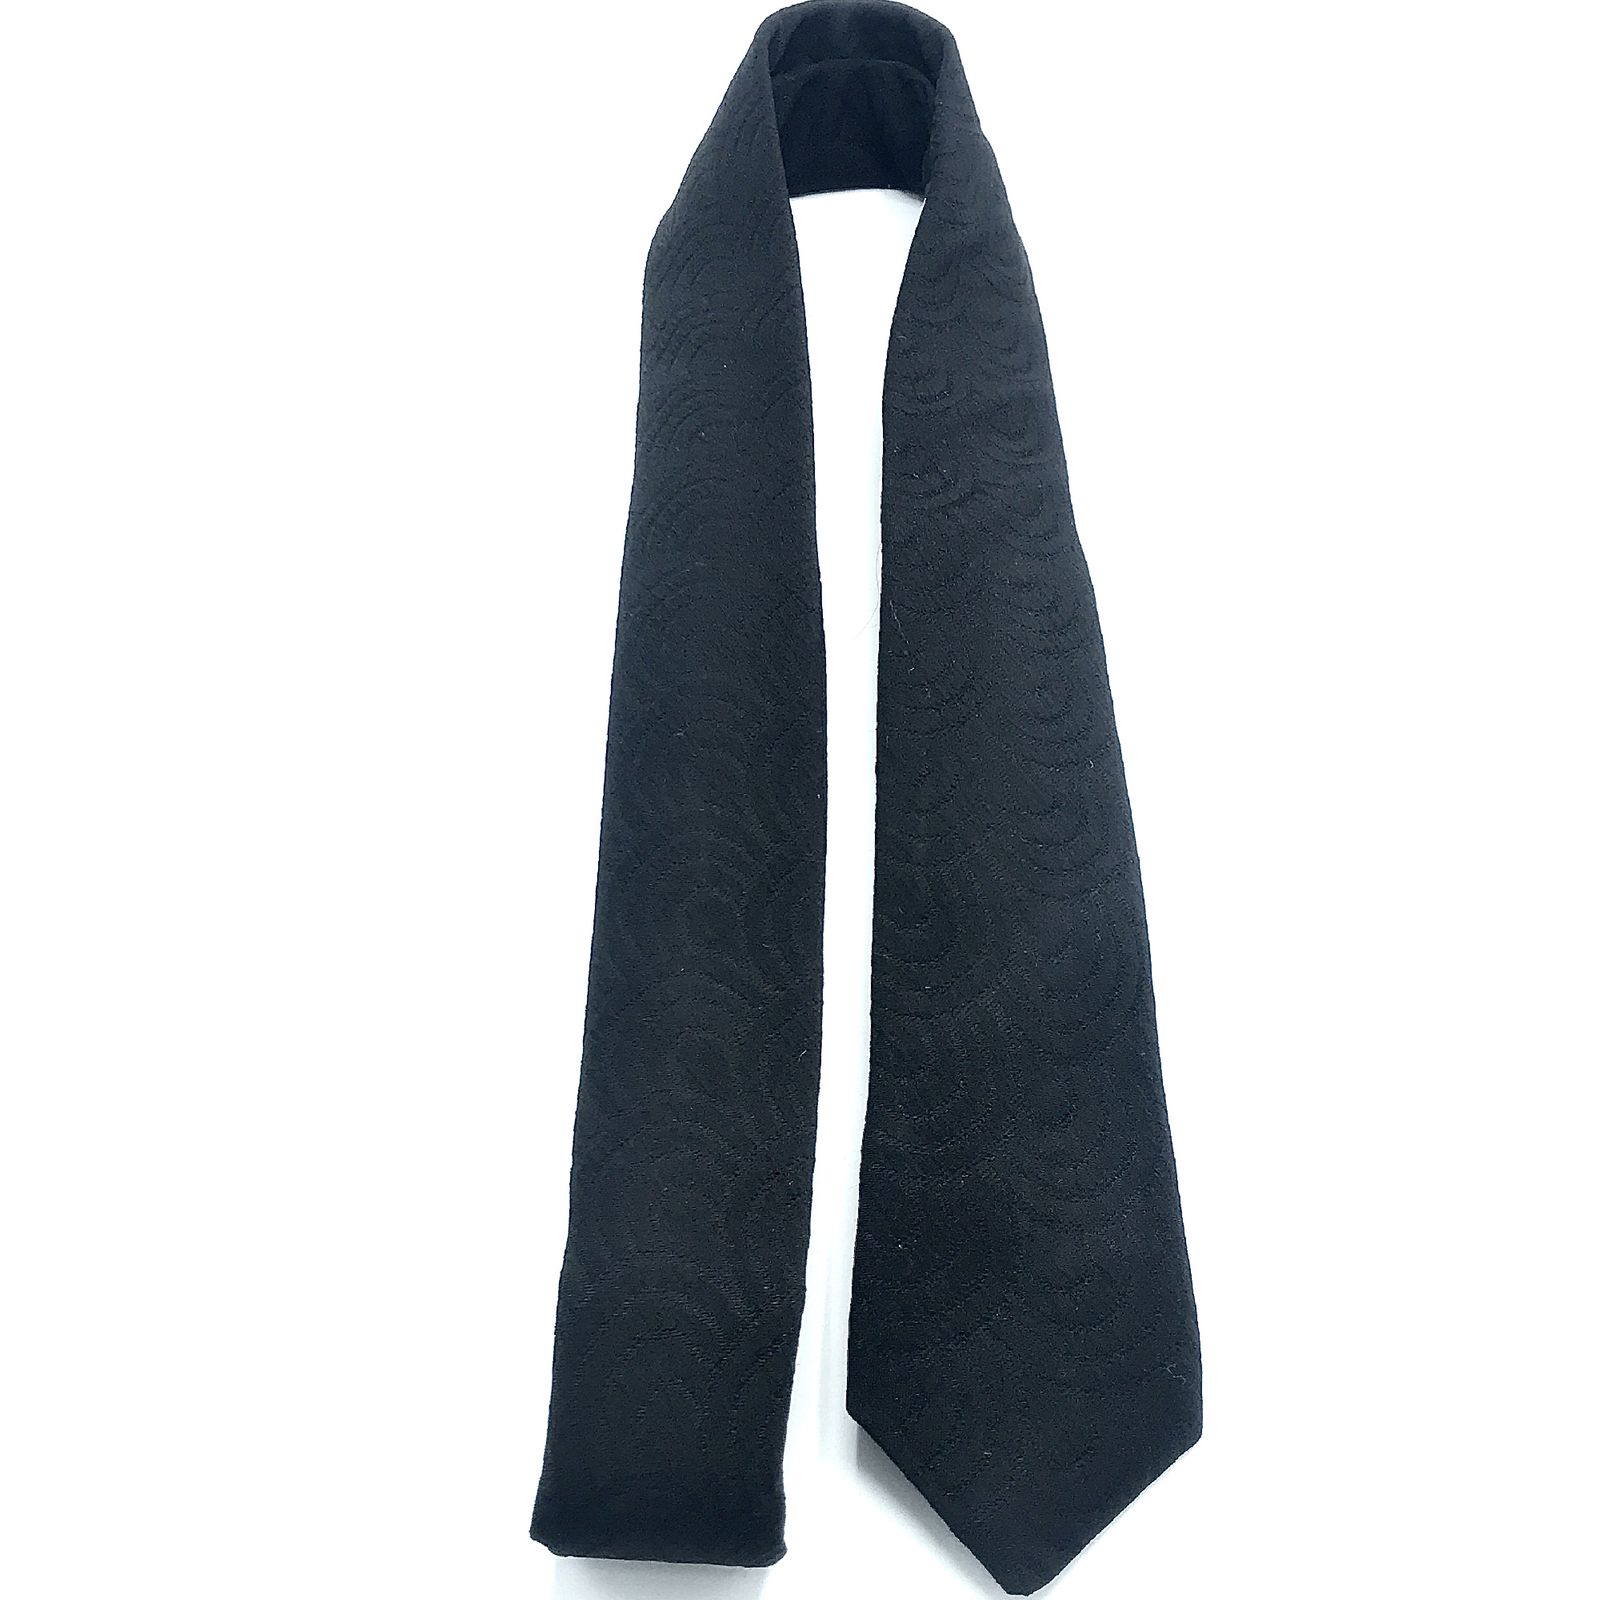  ست کراوات و دستمال جیب مردانه هکس ایران مدل KT-BK 23 -  - 5